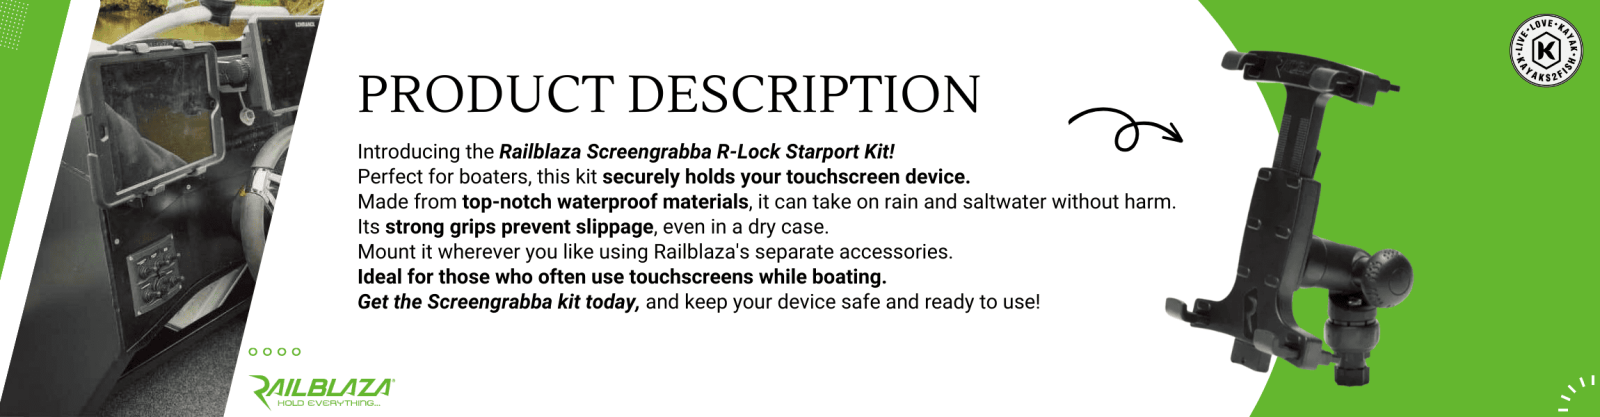 Railblaza Screengrabba R-Lock Starport Kit